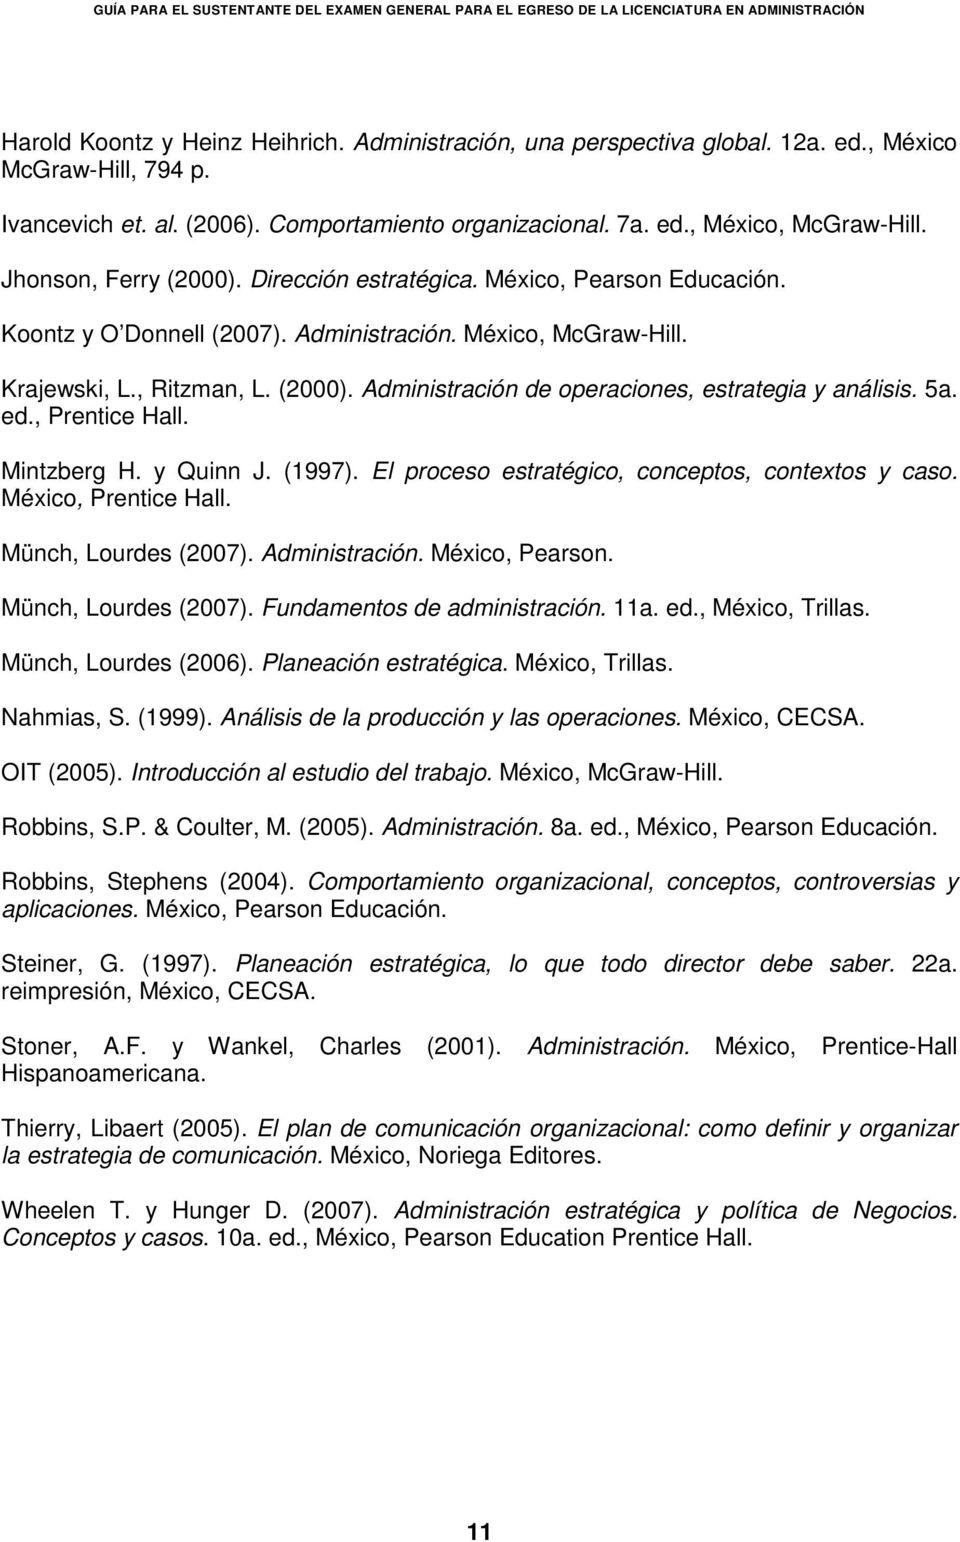 5a. ed., Prentice Hall. Mintzberg H. y Quinn J. (1997). El proceso estratégico, conceptos, contextos y caso. México, Prentice Hall. Münch, Lourdes (2007). Administración. México, Pearson.